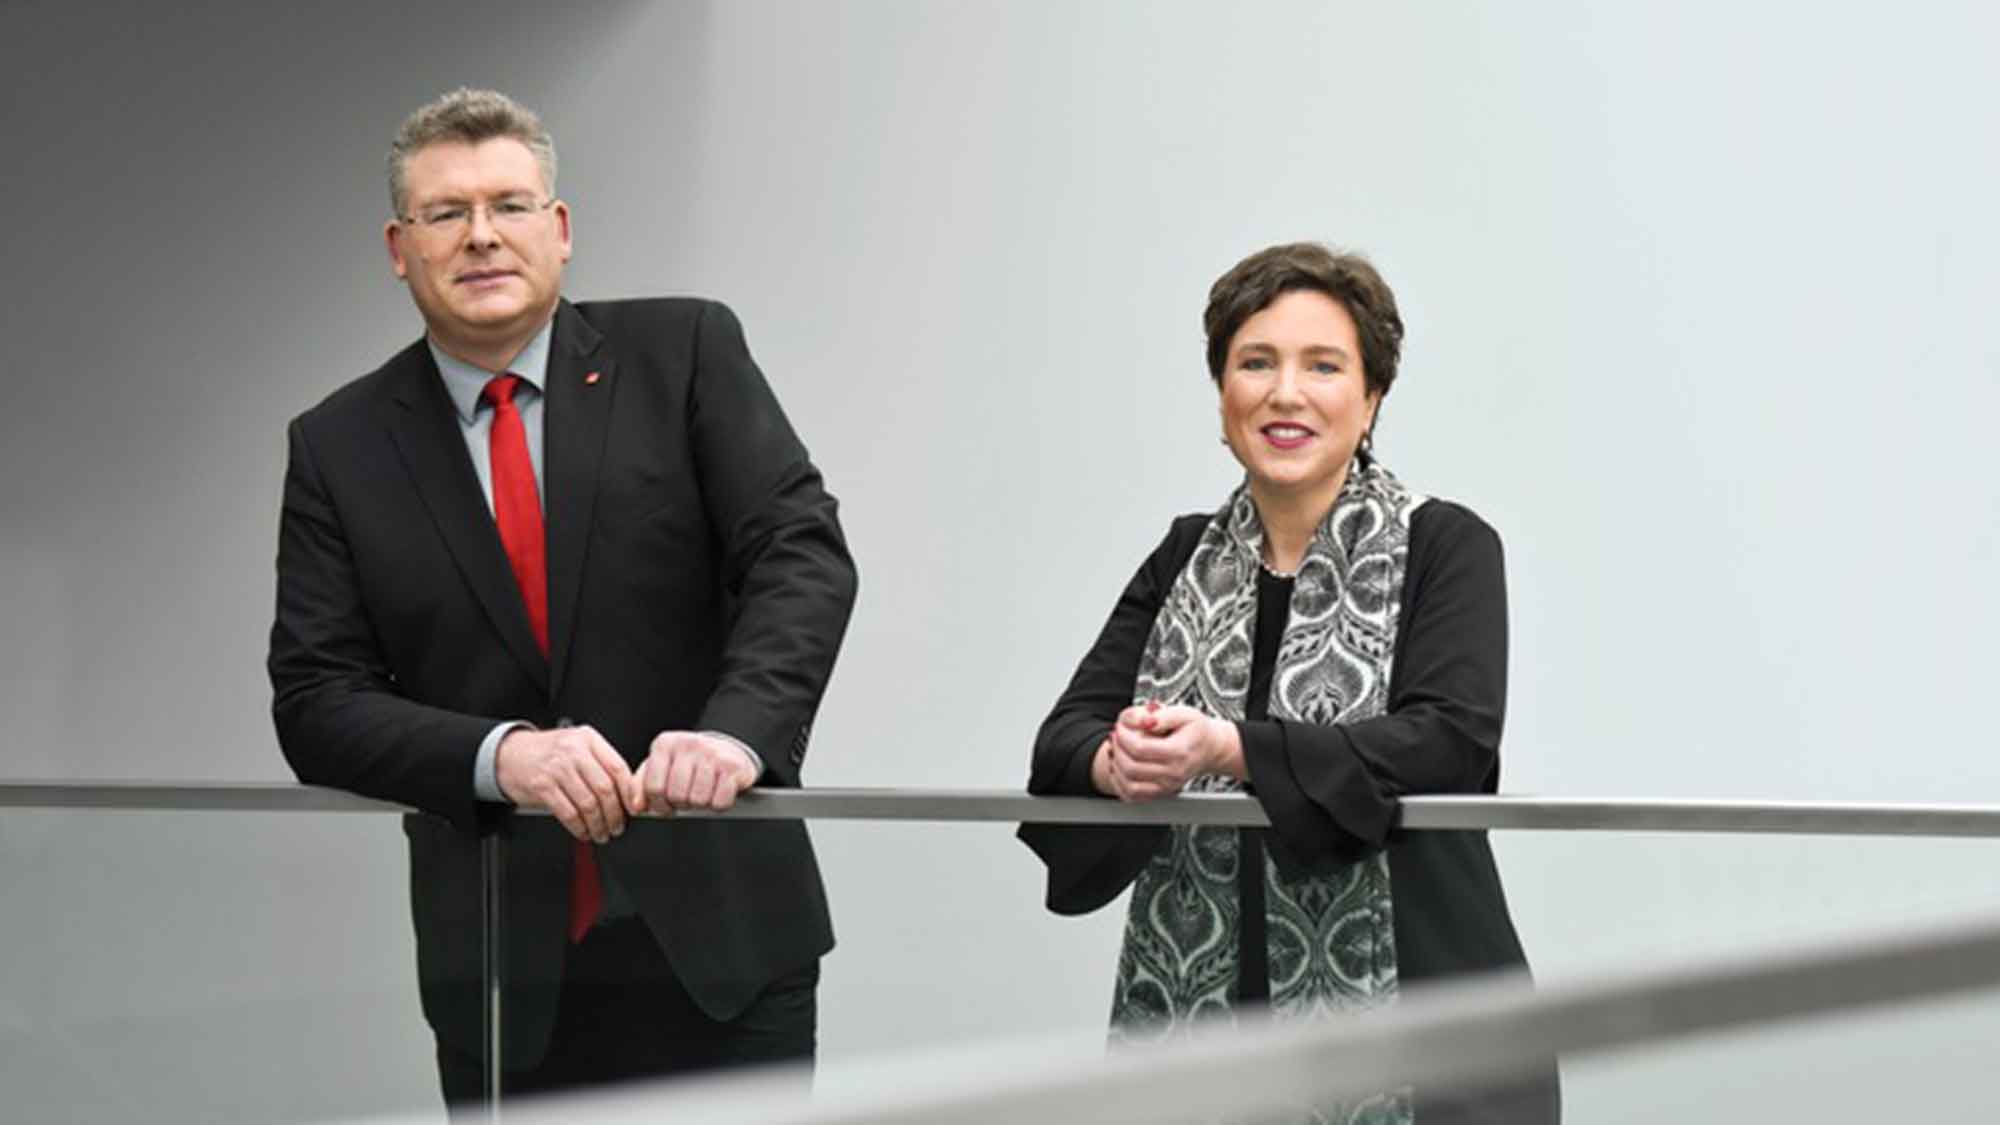 AOK Bundesverband: Wagenmann und Lambertin als Vorsitzende des Aufsichtsrats wiedergewählt